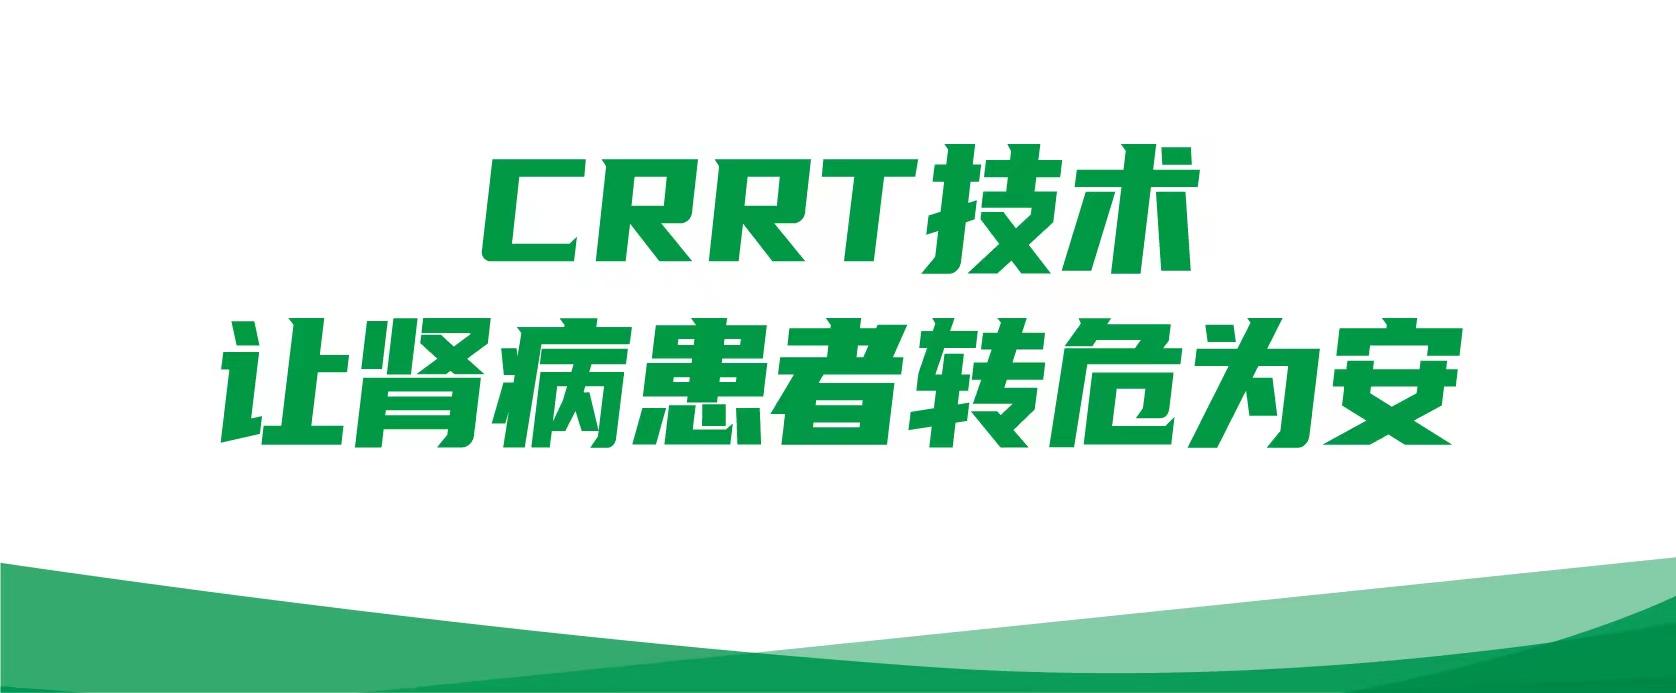 【透析中心病例】CRRT技术让肾病患者转危为安